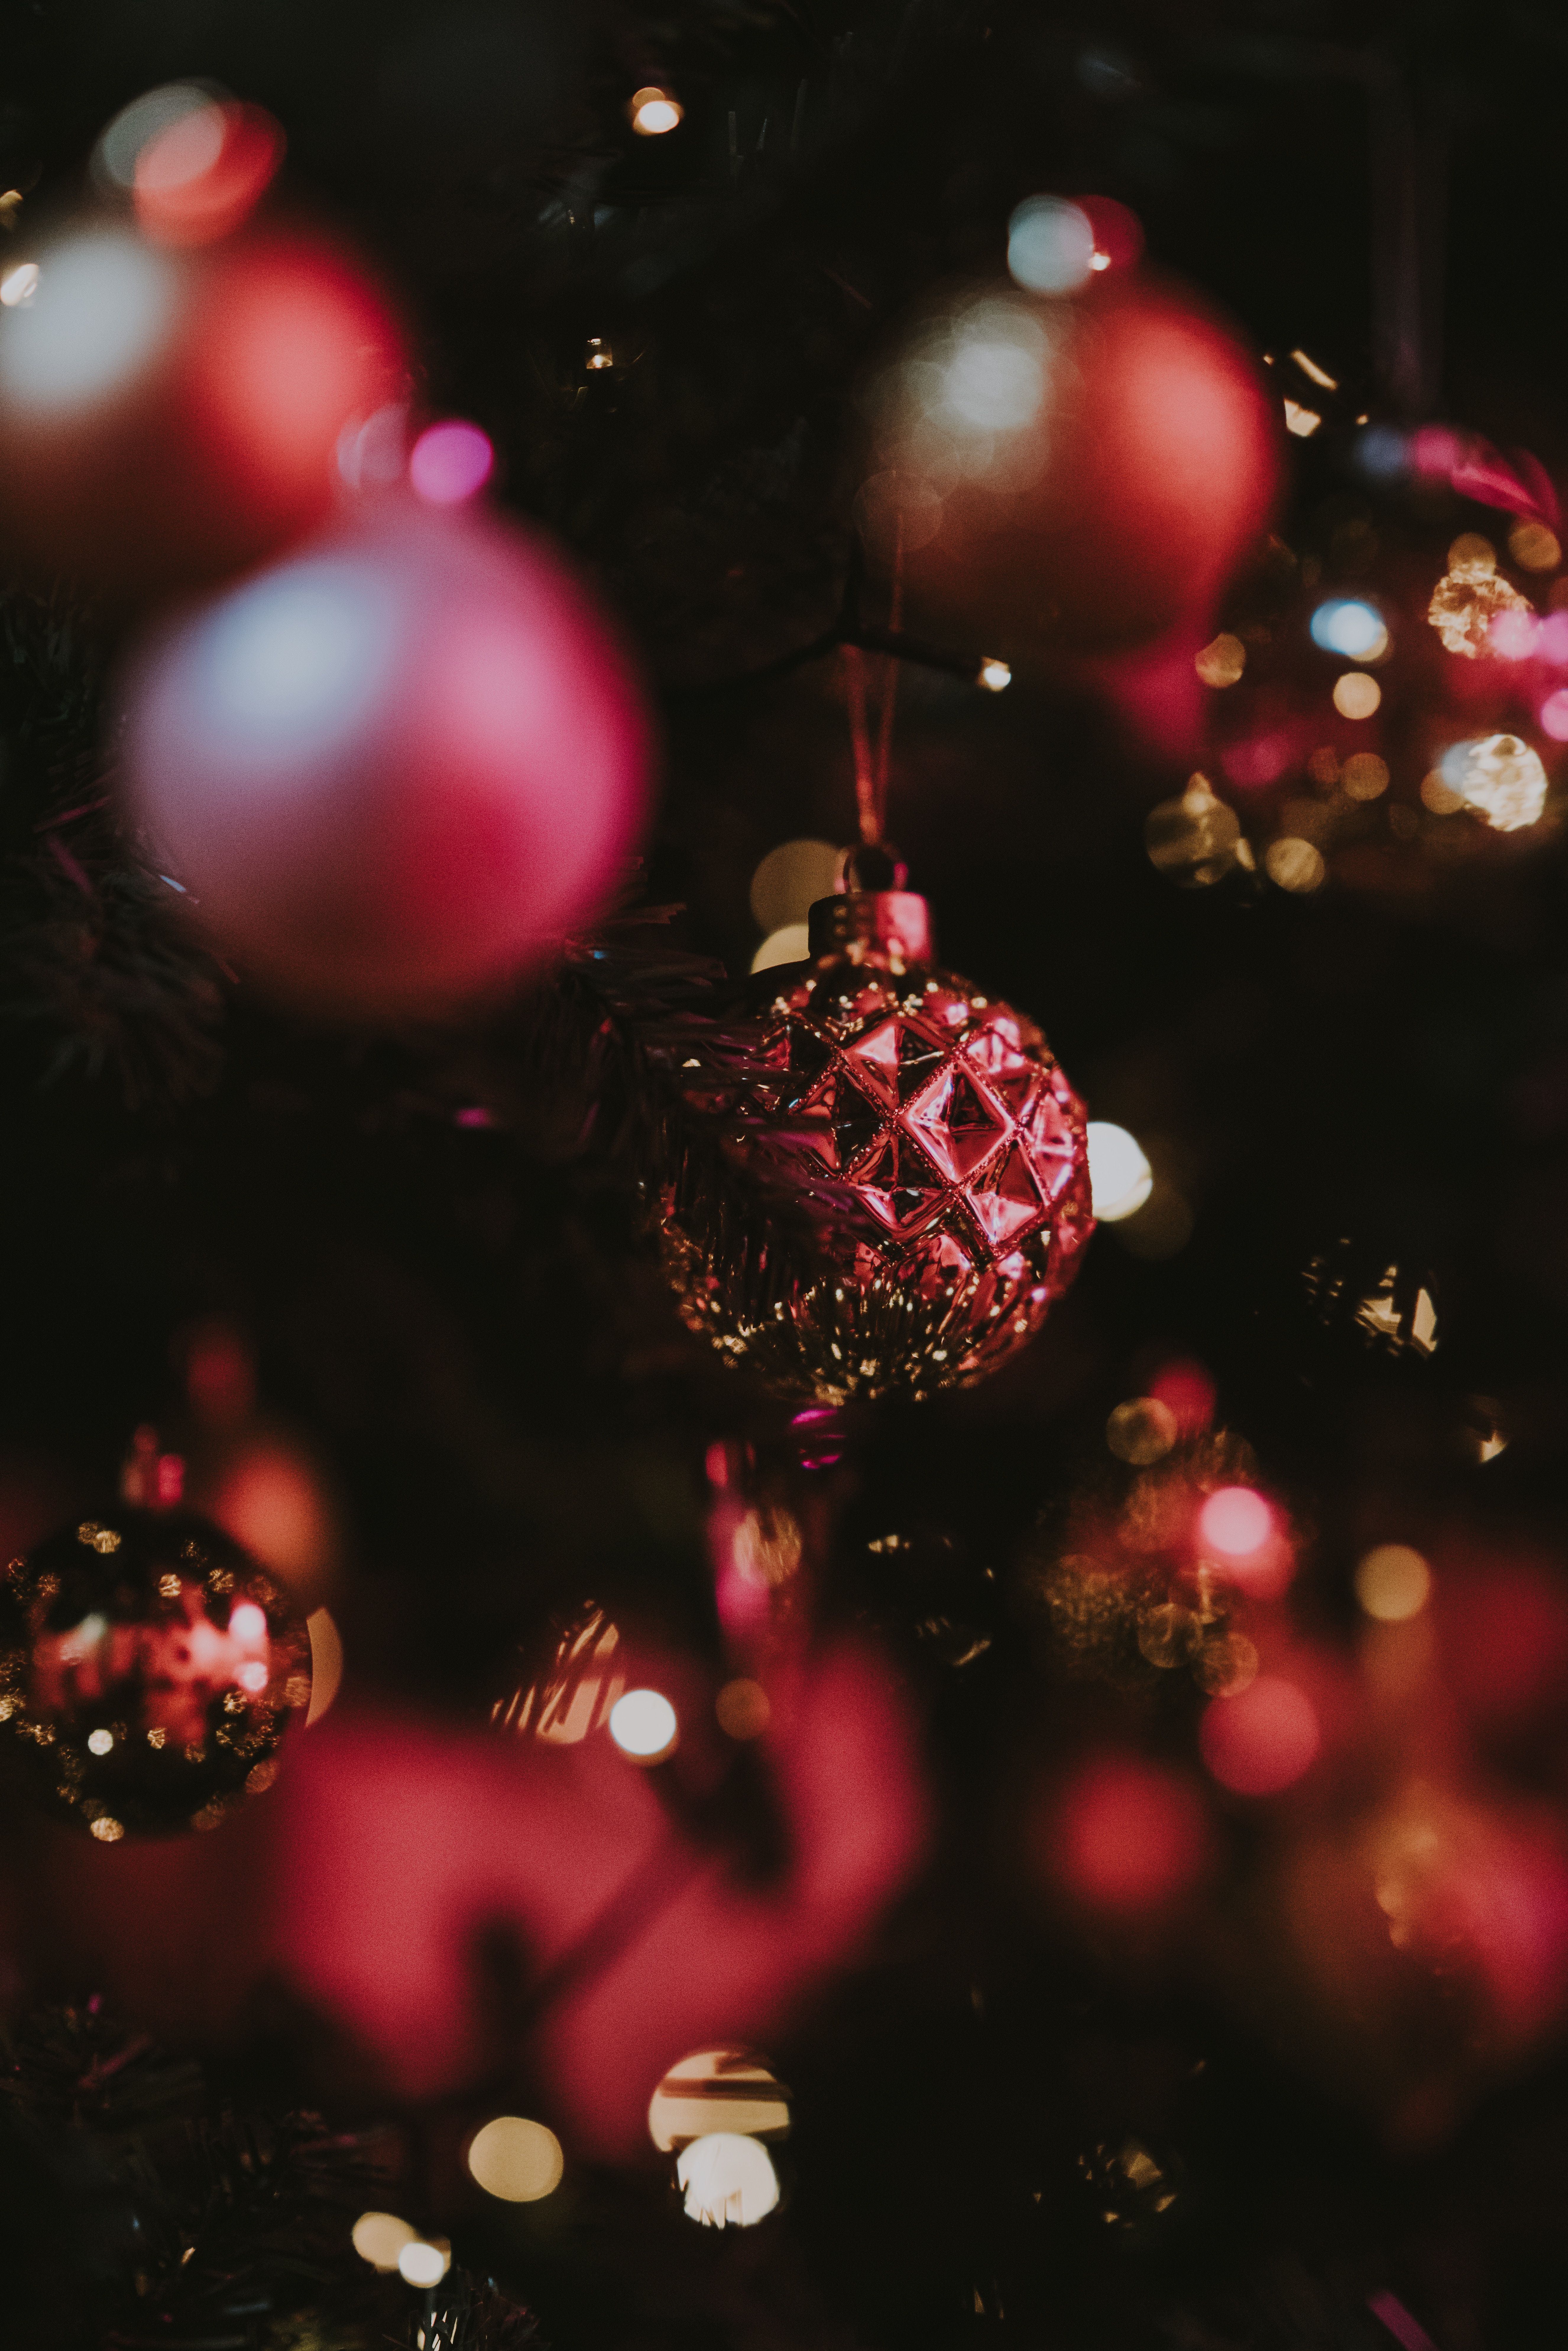  Handy Weihnachten Hintergrundbild 5304x7952. Hintergrundbild für Handys: Neues Jahr, Weihnachtsbaum Spielzeug, Bokeh, Boquet, Feiertage, Ball, Neujahr, Scheinen, Brillanz, Blendung, Weihnachten, 57031 Bild kostenlos herunterladen